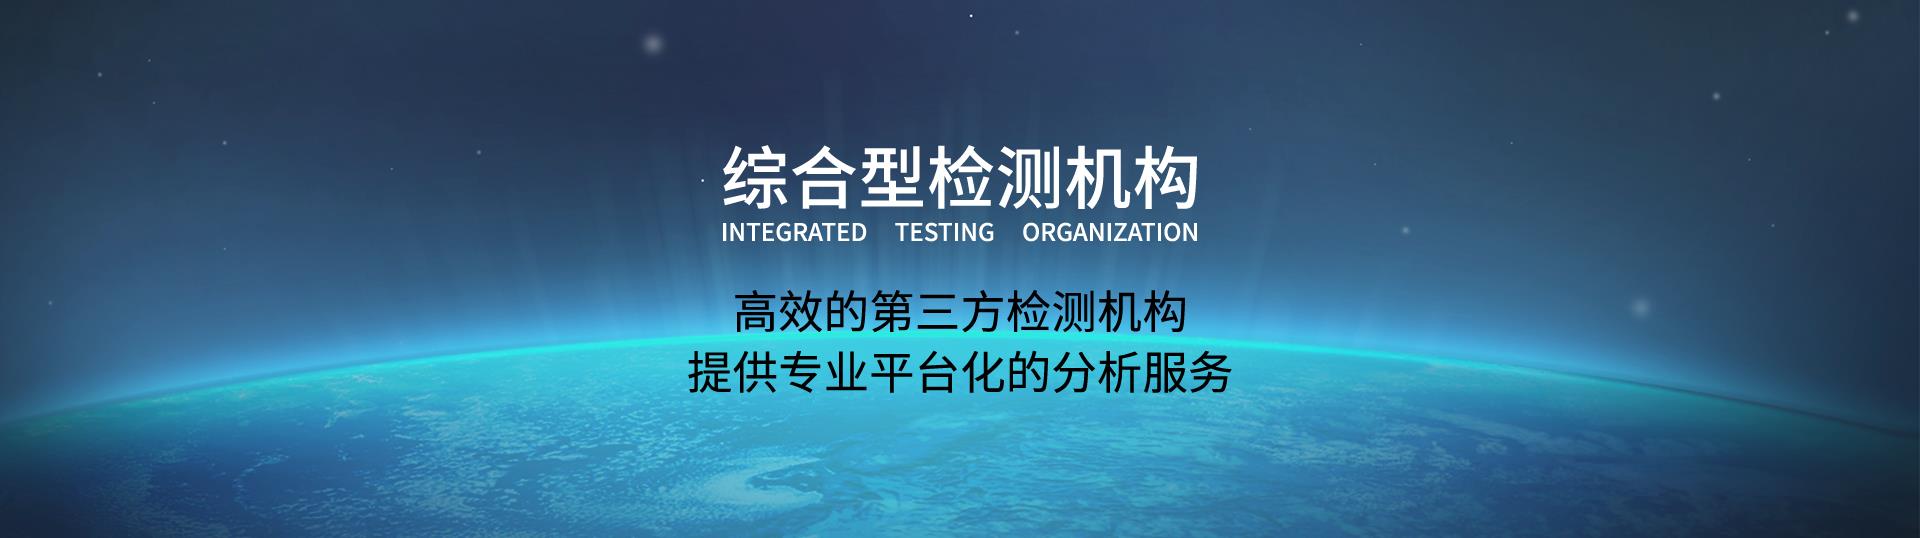 深圳市訊科標準技術服務有限公司